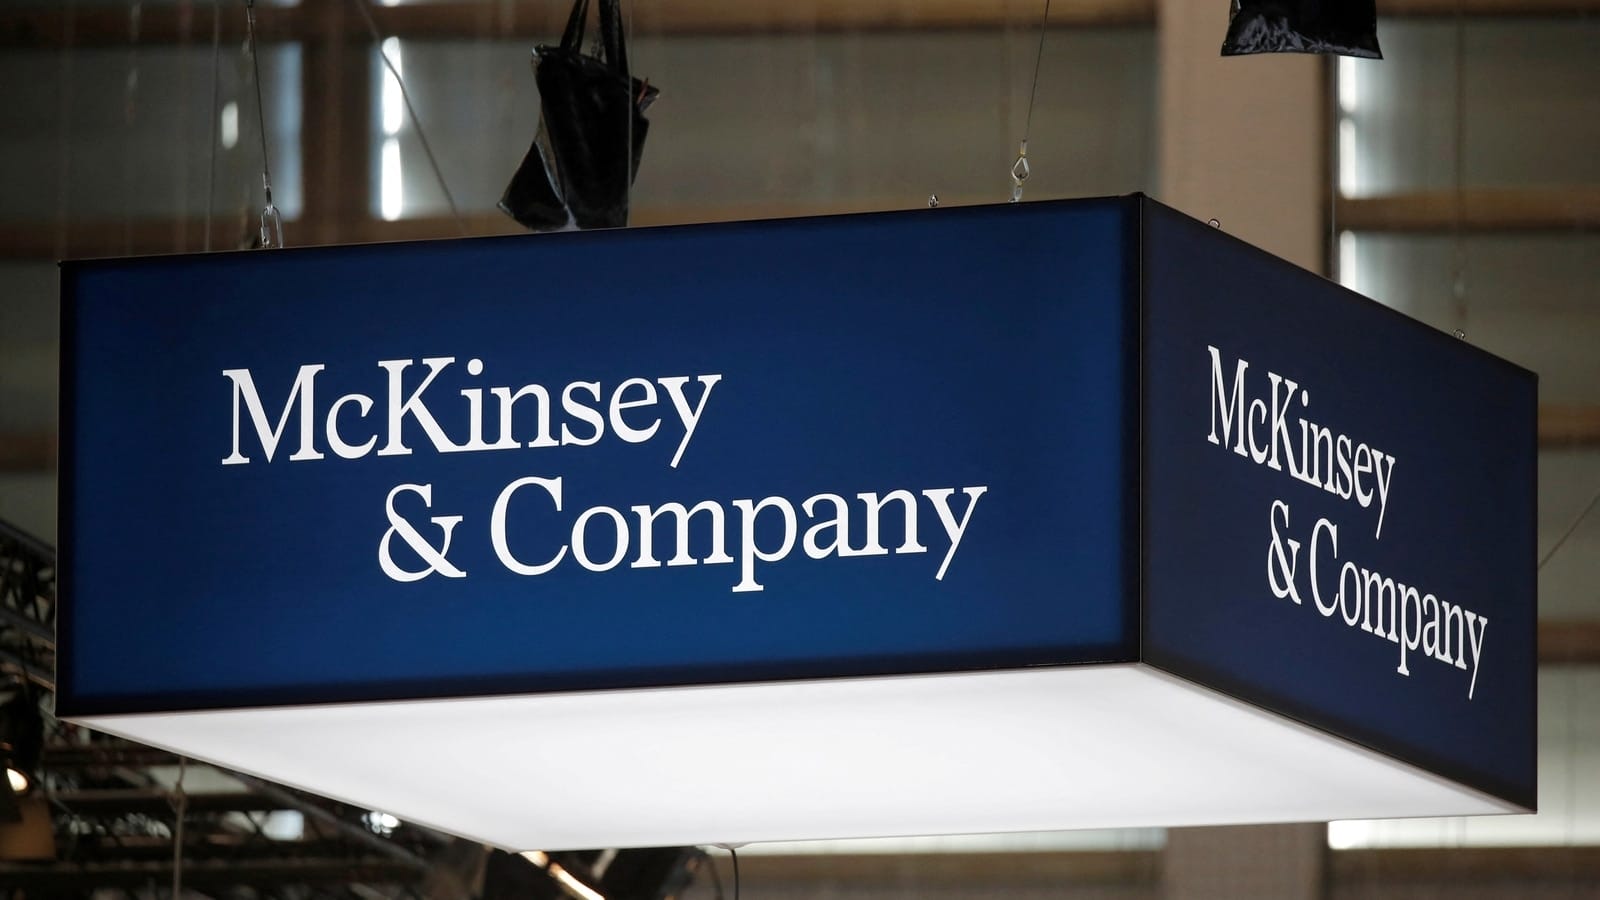 Bengaluru techie reveals 'hidden perk' of McKinsey job. It's not ‘business class tickets or 5 star hotels’